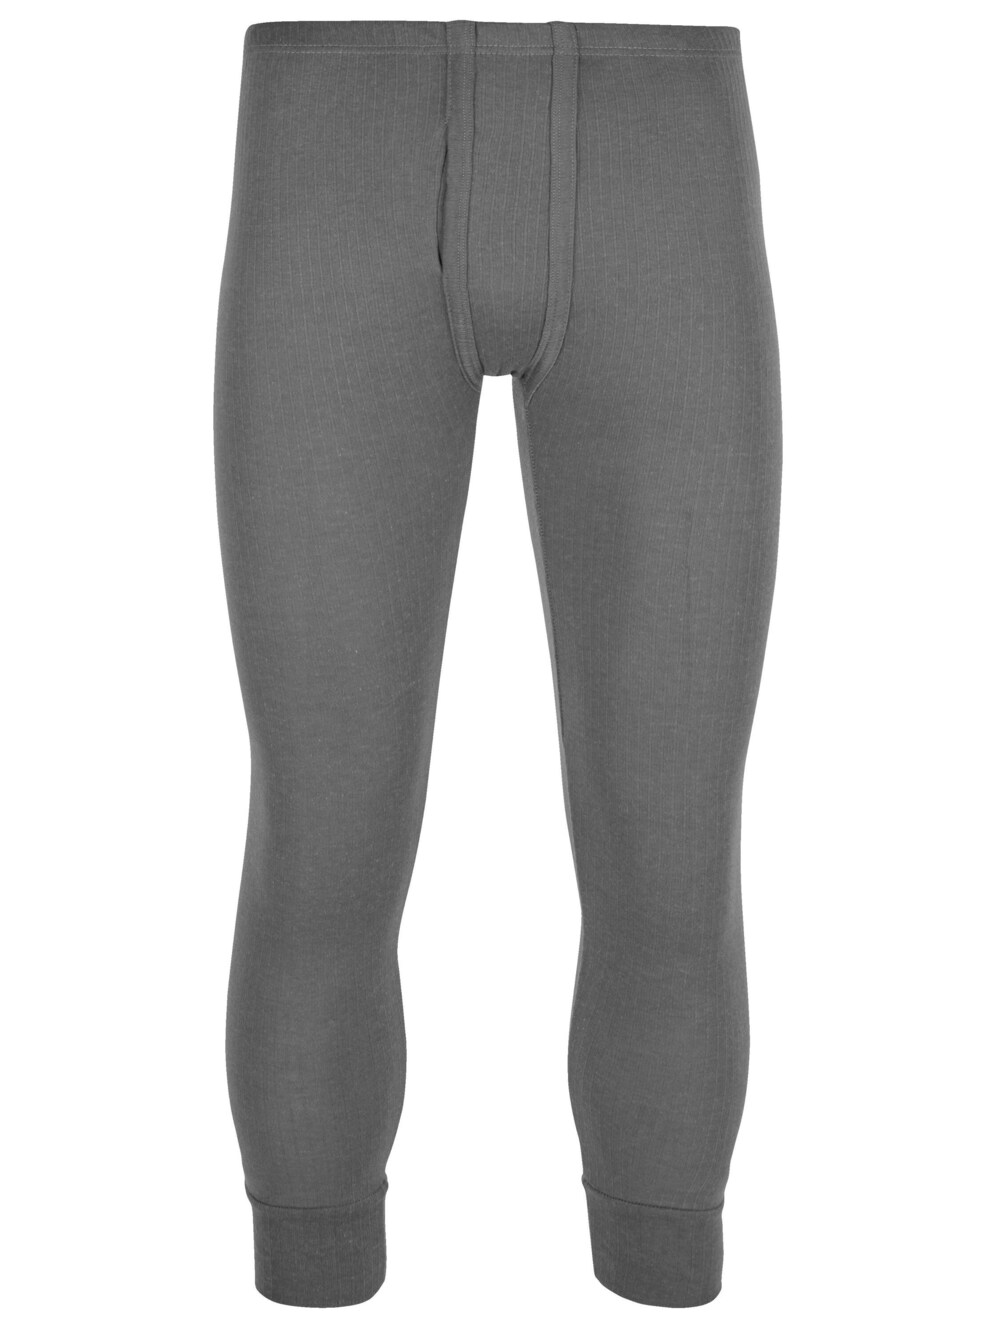 Узкие спортивные брюки Normani, пестрый серый узкие спортивные брюки normani синий